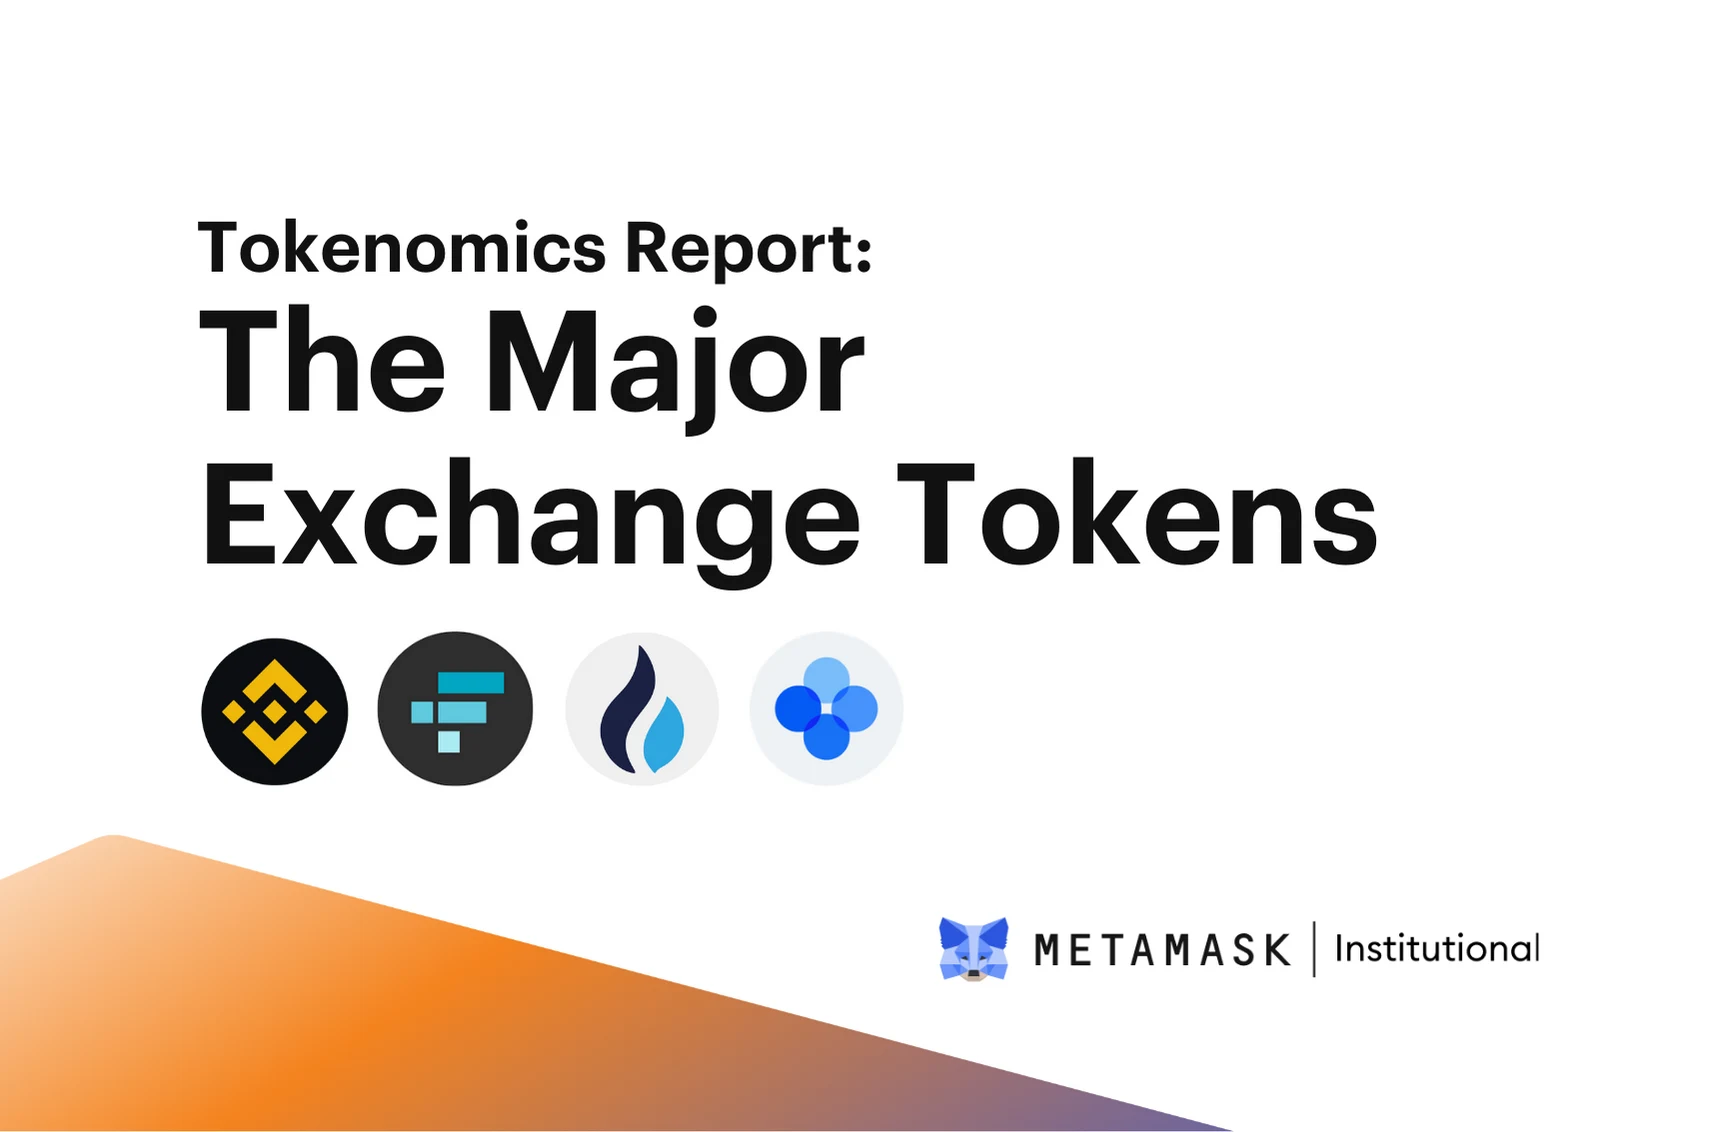 Image: Tokenomics Report: The Major Exchange Tokens